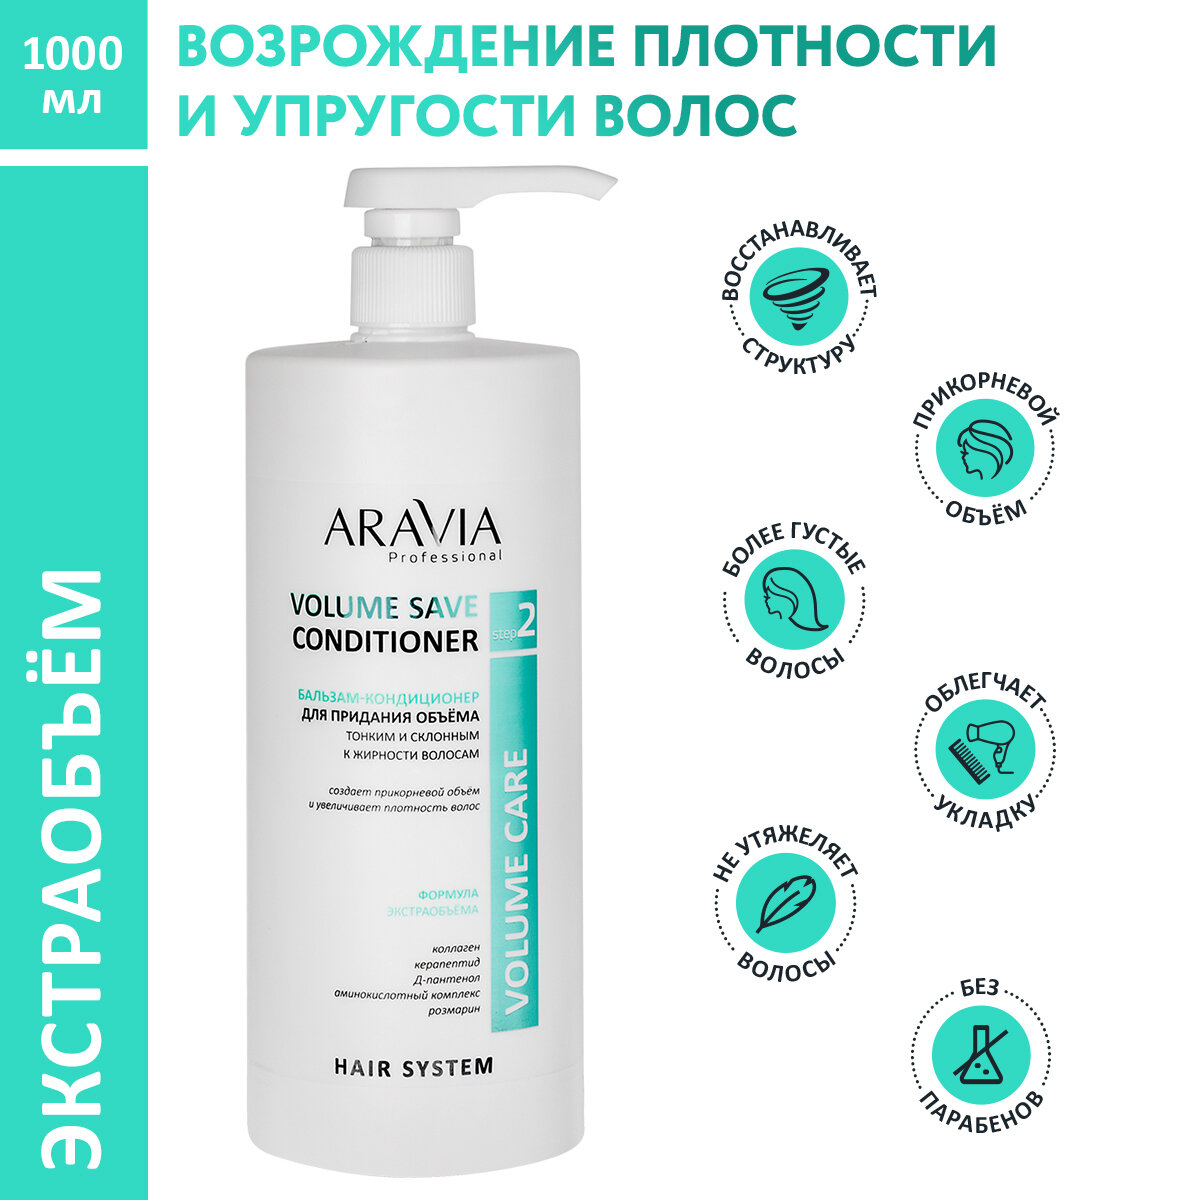 ARAVIA Бальзам-кондиционер Volume Save Conditioner для придания объема тонким и склонным к жирности волосам